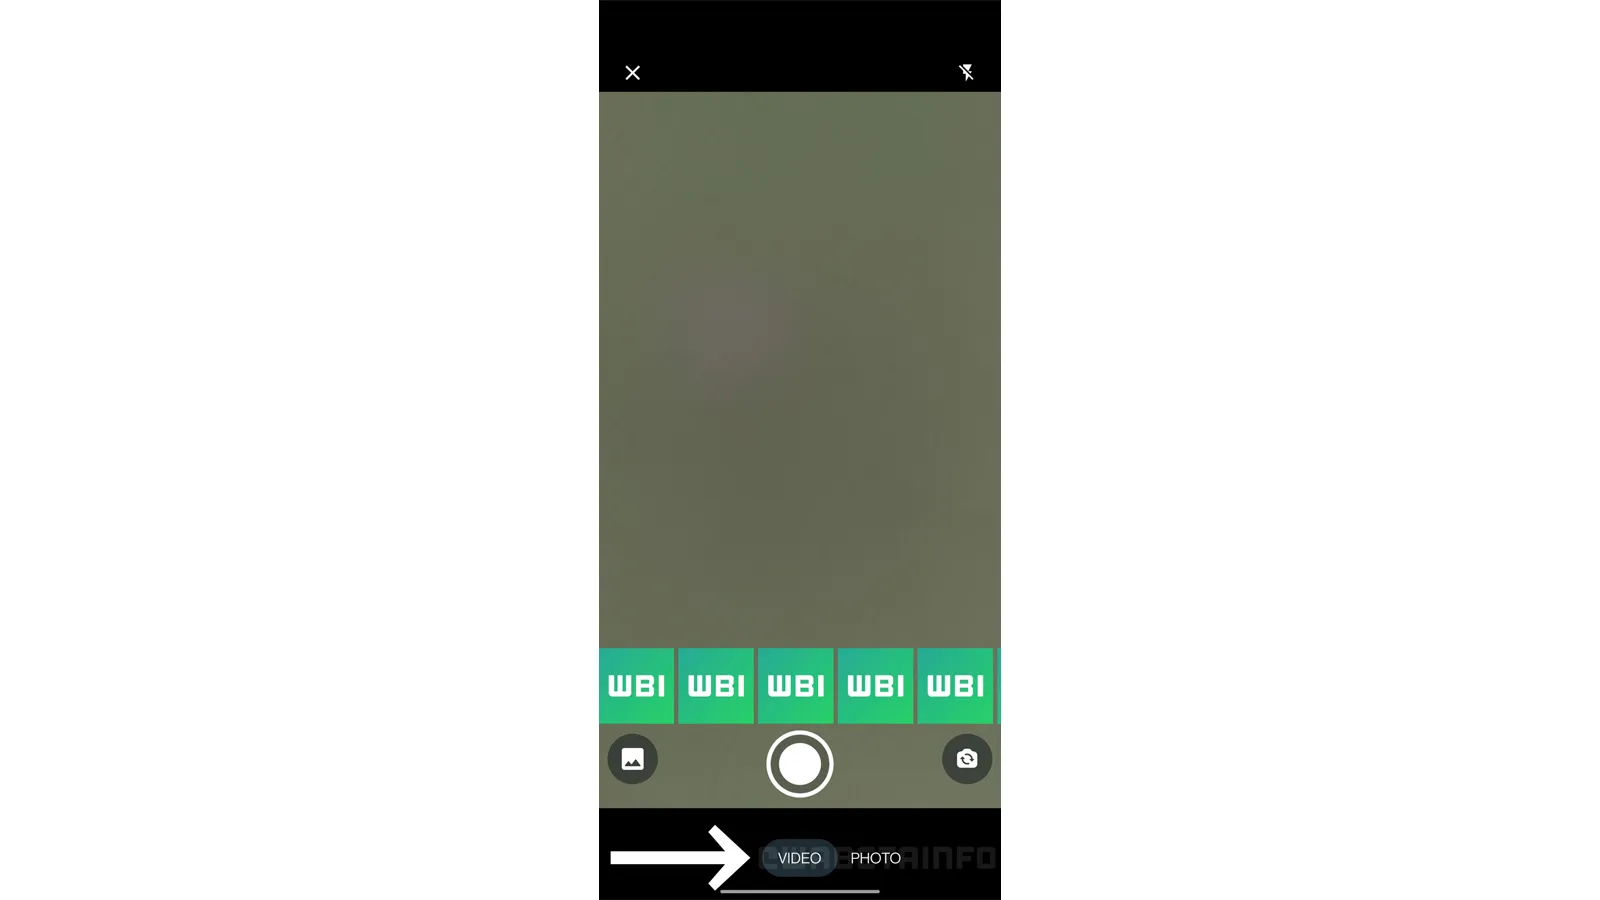 O alternador na parte de baixo da tela permite trocar do modo vídeo para o modo foto (Imagem: Reprodução/WABetaInfo)